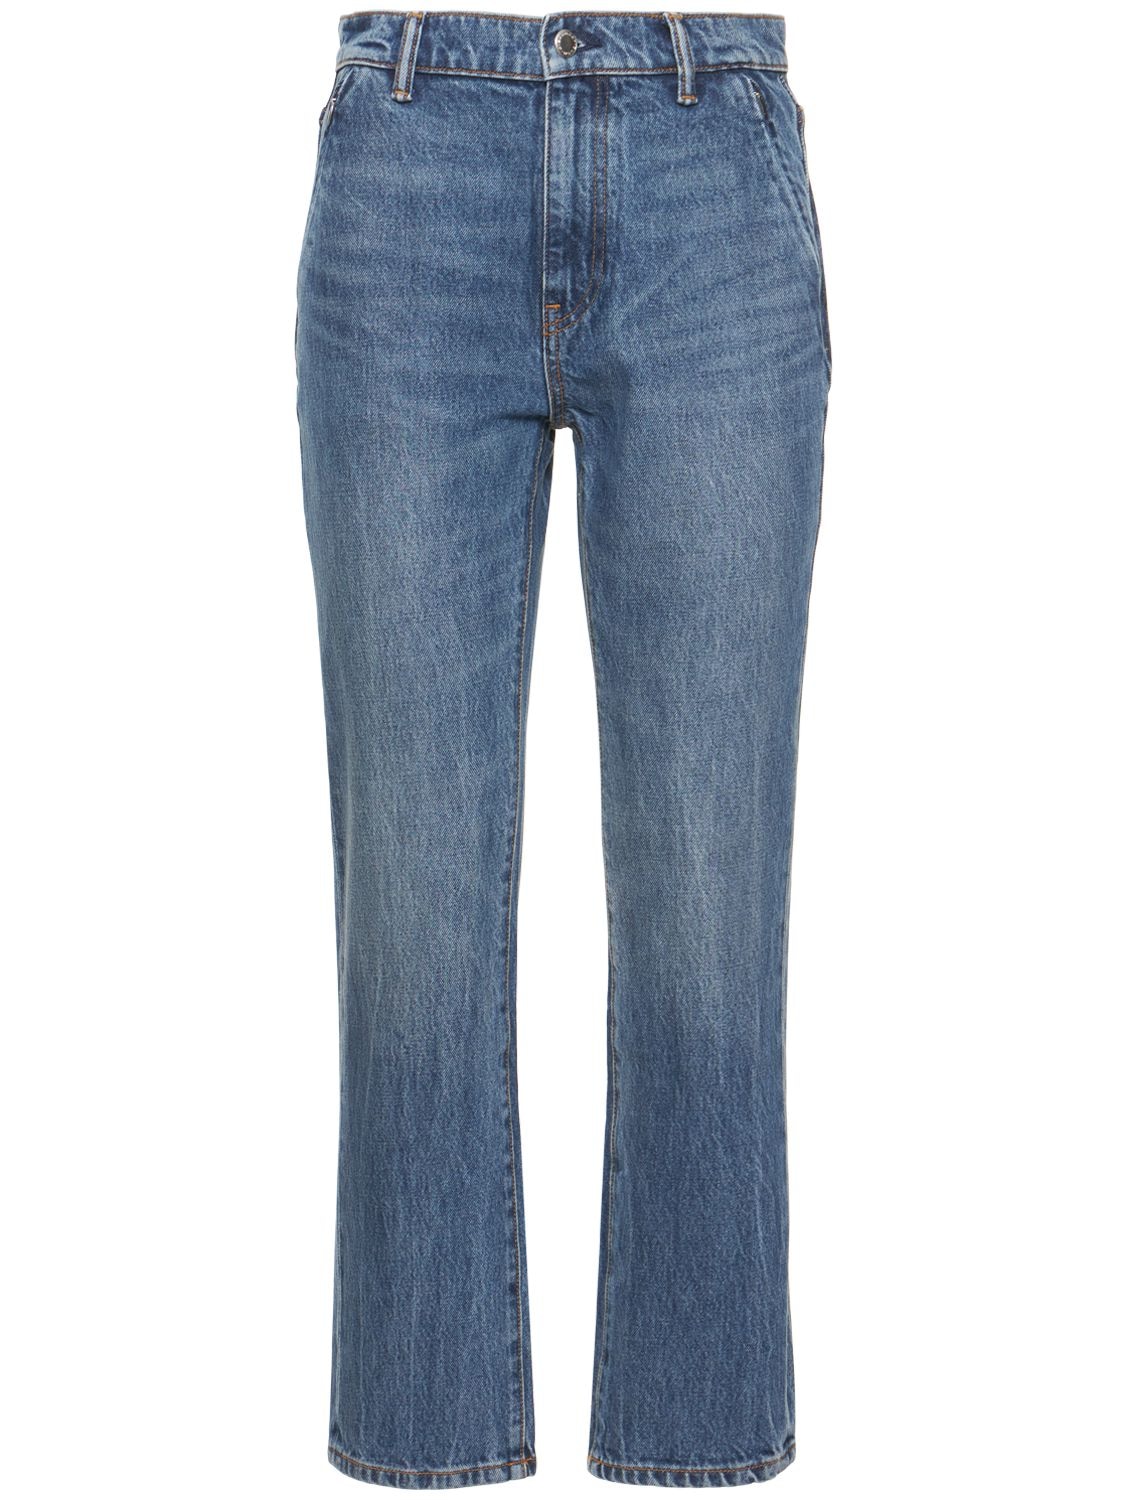 Mujer Jeans De Algodón Con Cintura Alta 29 - ALEXANDER WANG - Modalova